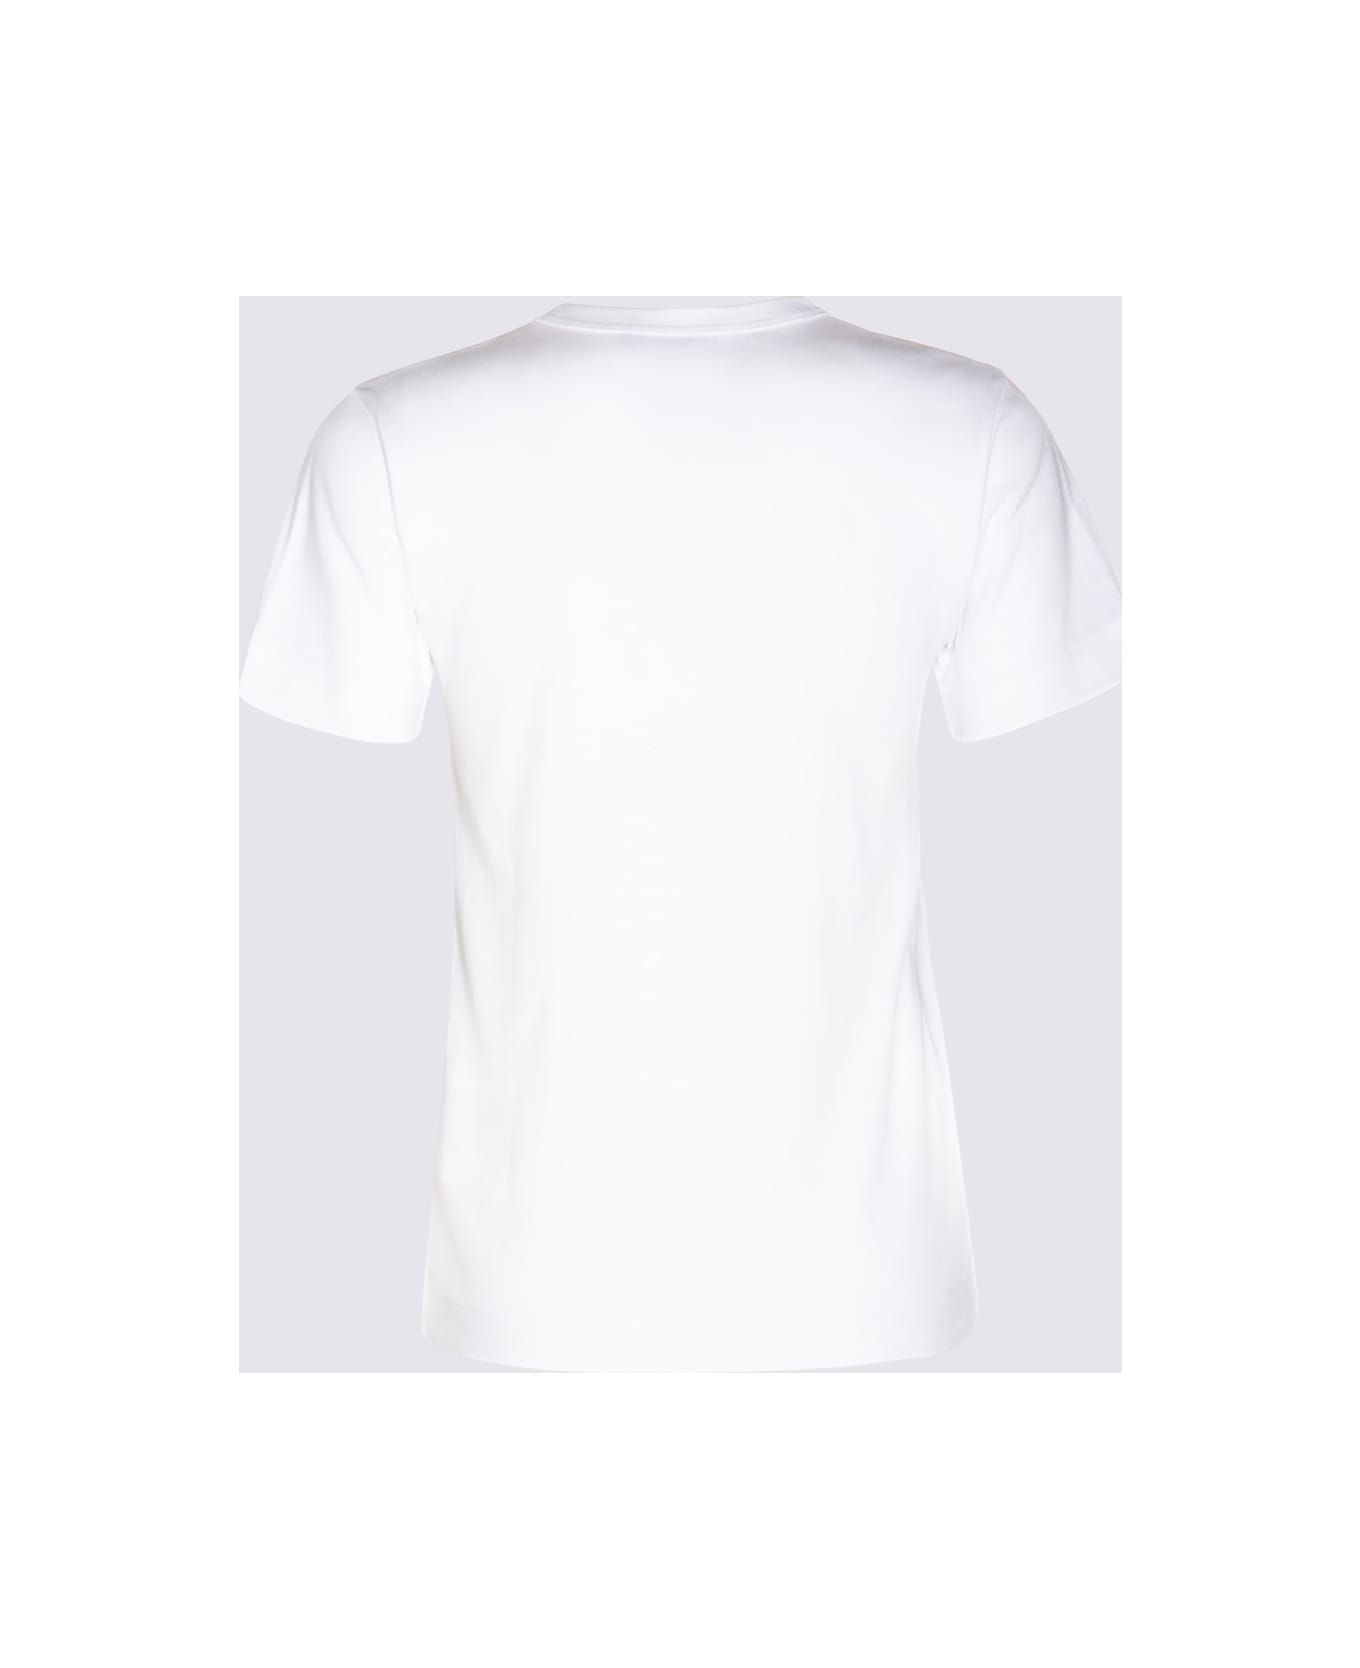 Comme des Garçons Play White Cotton T-shirt - White